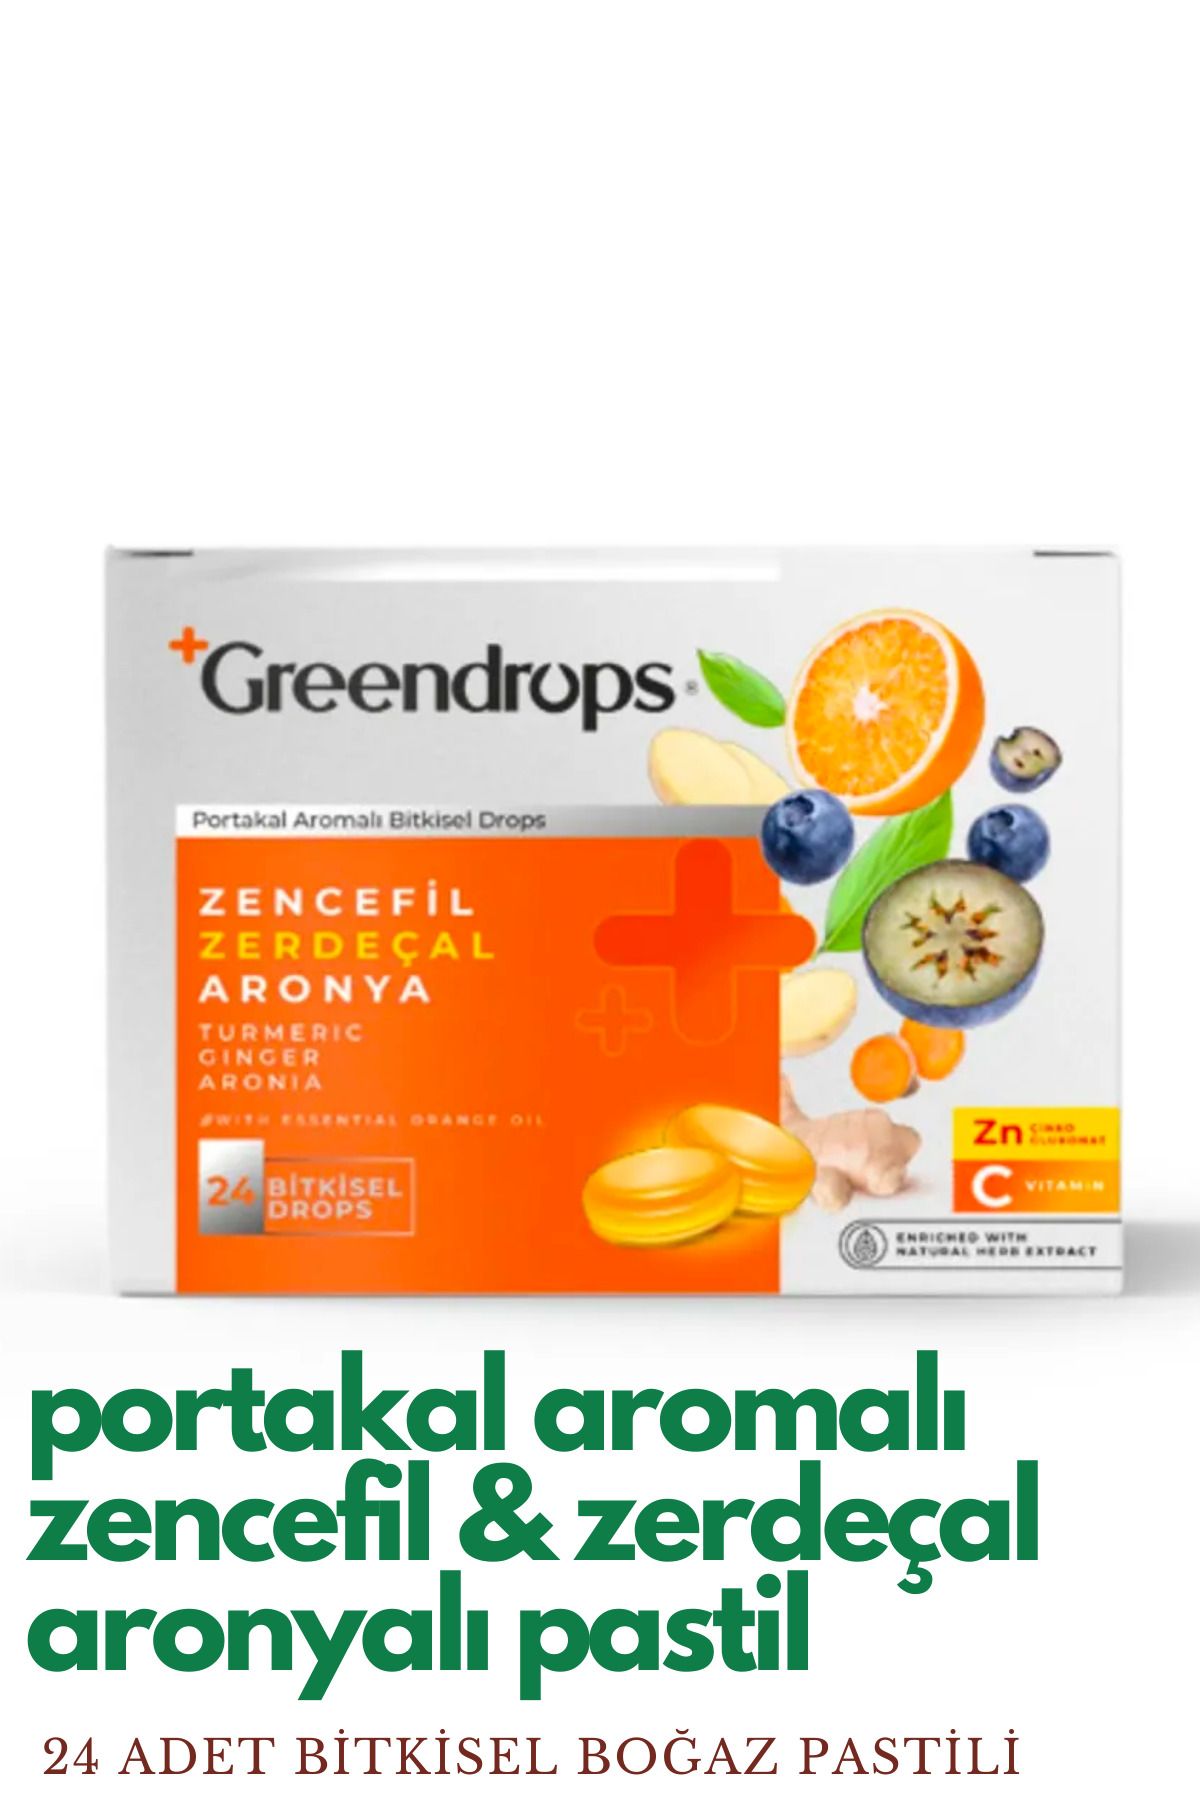 Greendrops Bitkisel Drops Boğaz Pastili - Portakal Aromalı - Zencefil, Zerdeçal Ve Aronya